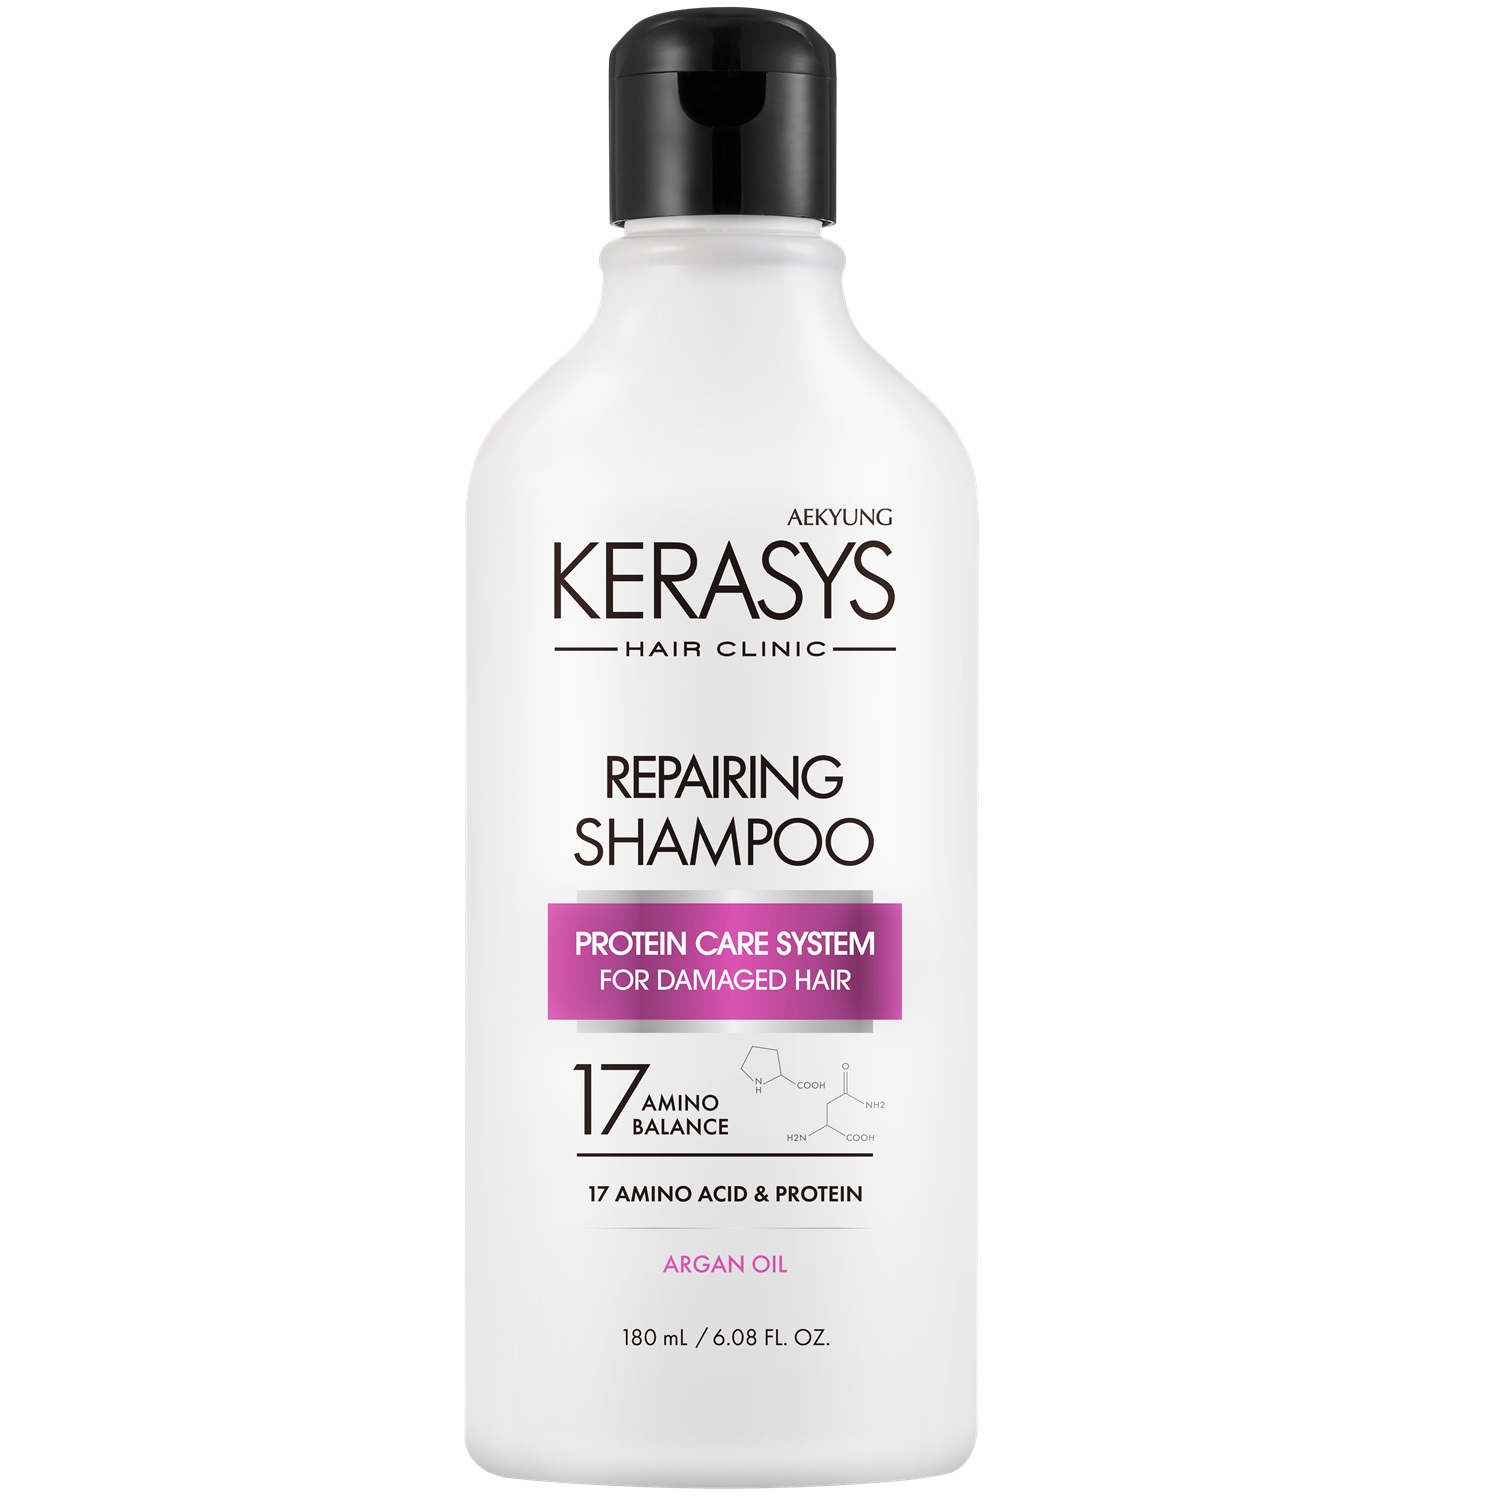 Kerasys Шампунь для волос восстанавливающий, 180 мл (Kerasys, Hair Clinic) цена и фото